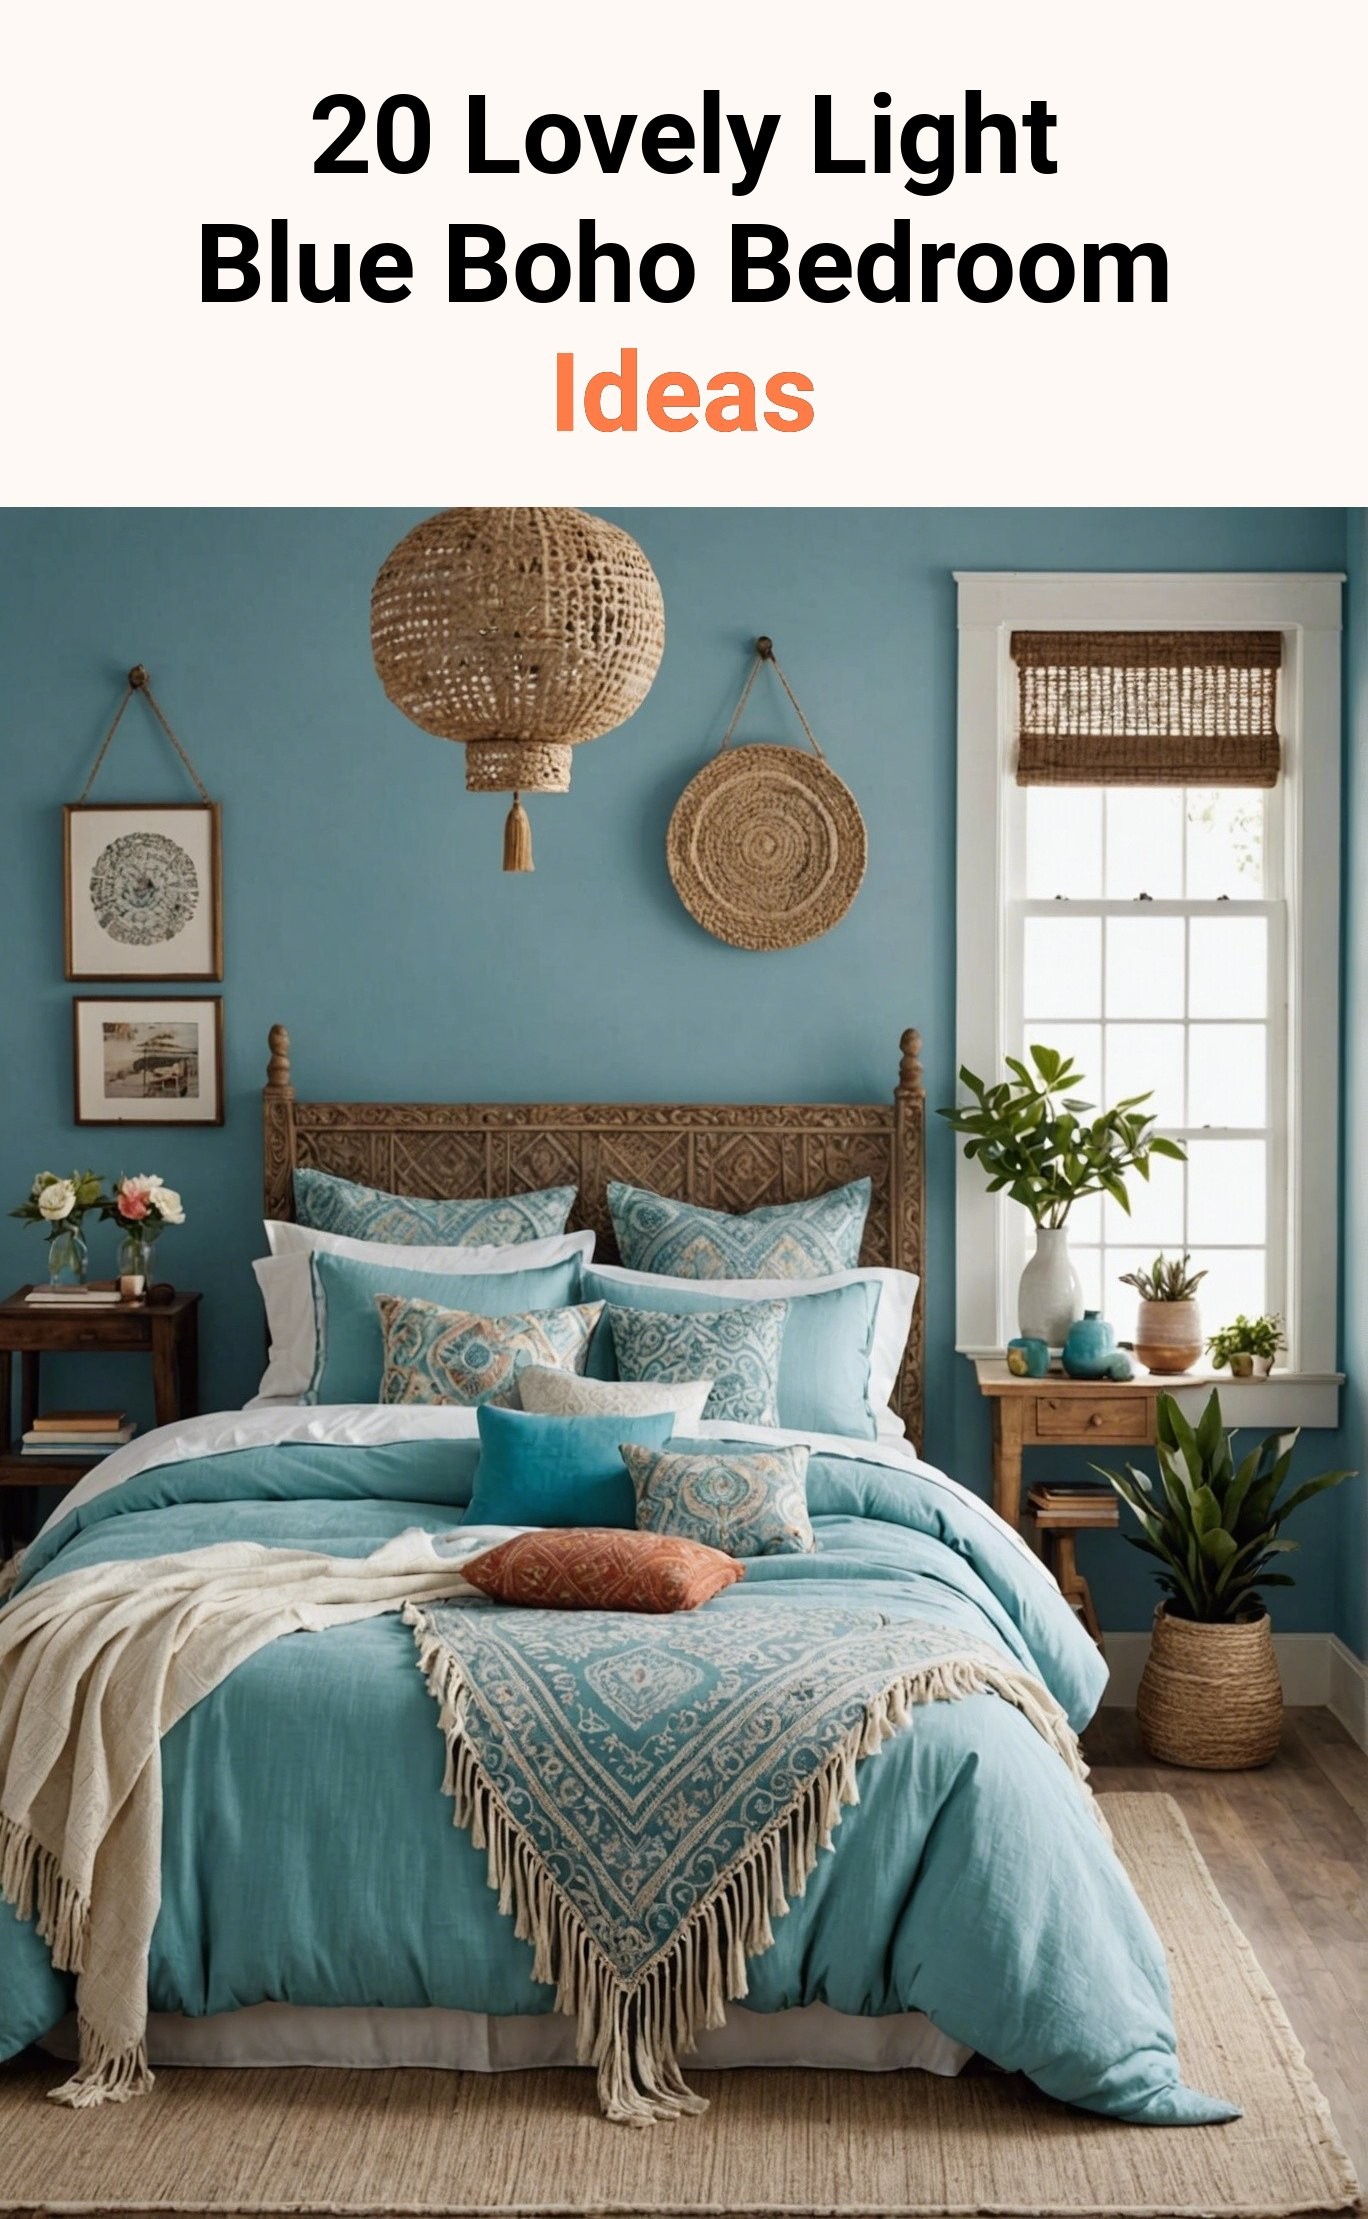 20 Lovely Light Blue Boho Bedroom Ideas